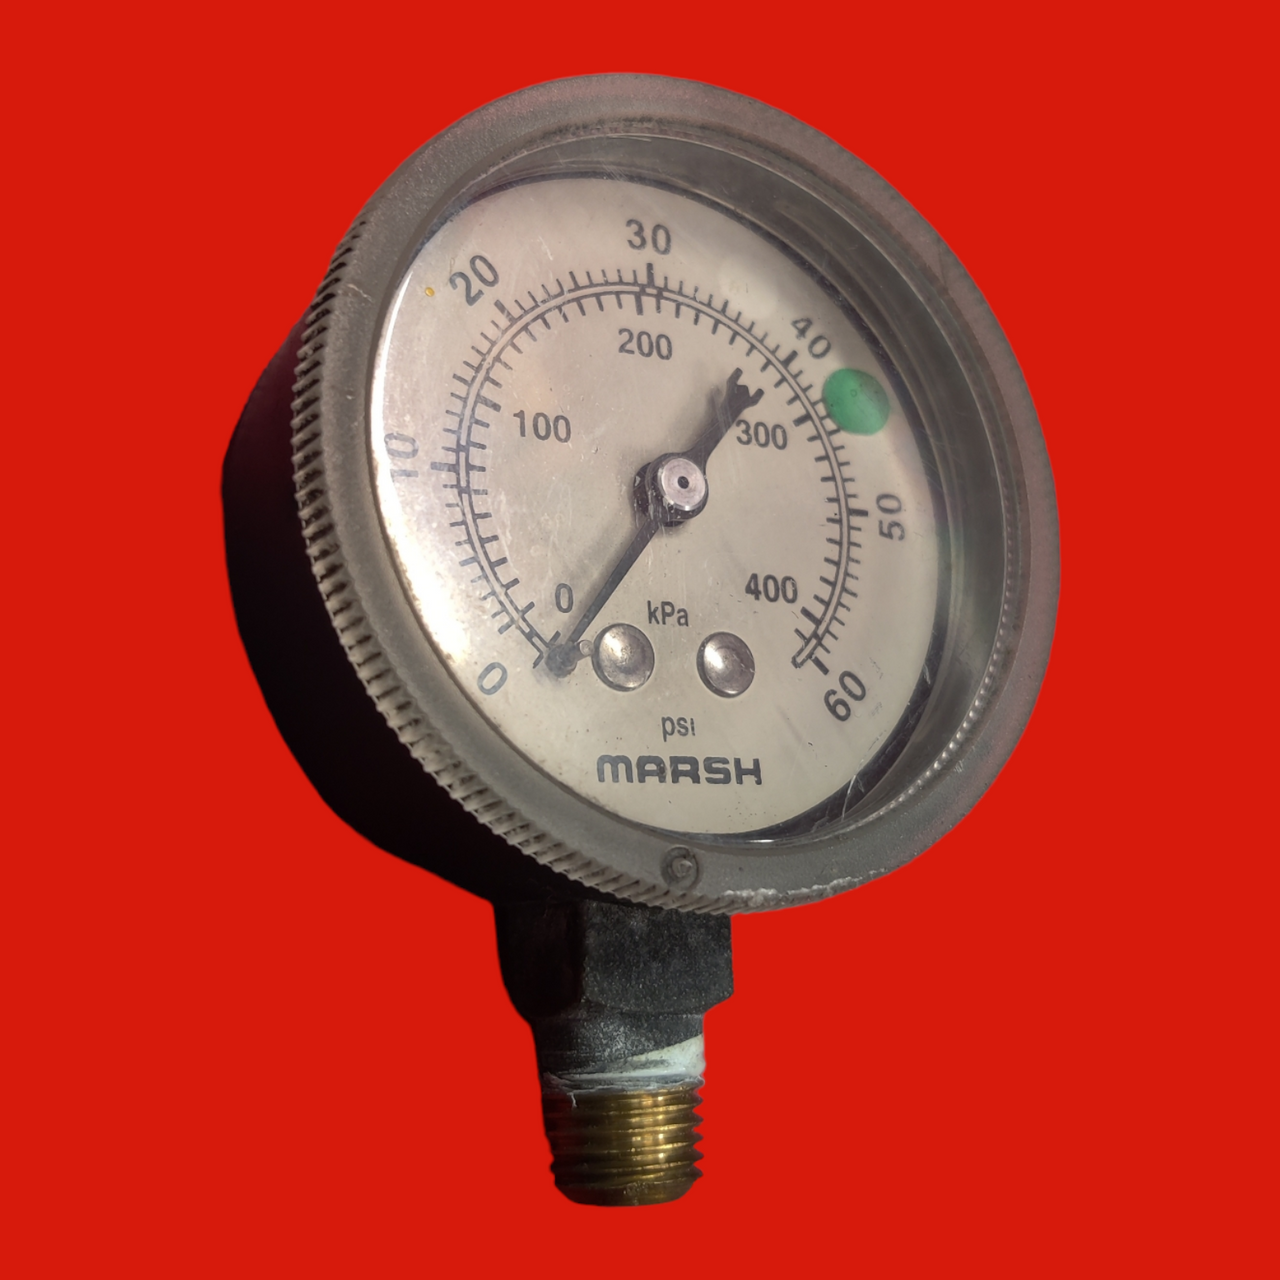 Marsh PSI Pressure Gauge 0-60, kPa 0-400